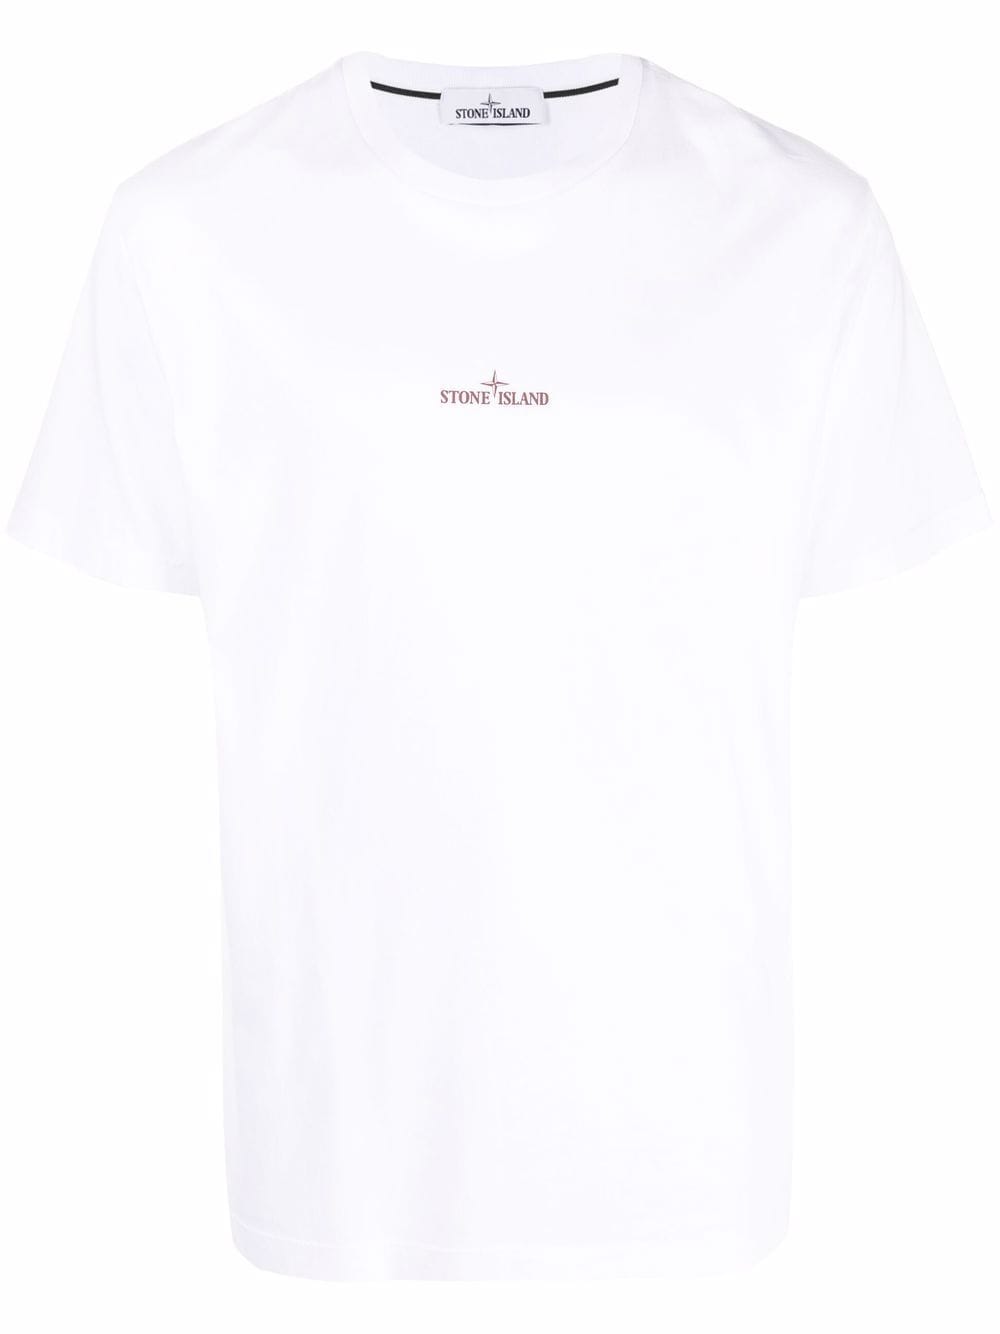 STONE ISLAND Logo Print T-Shirt White - MAISONDEFASHION.COM